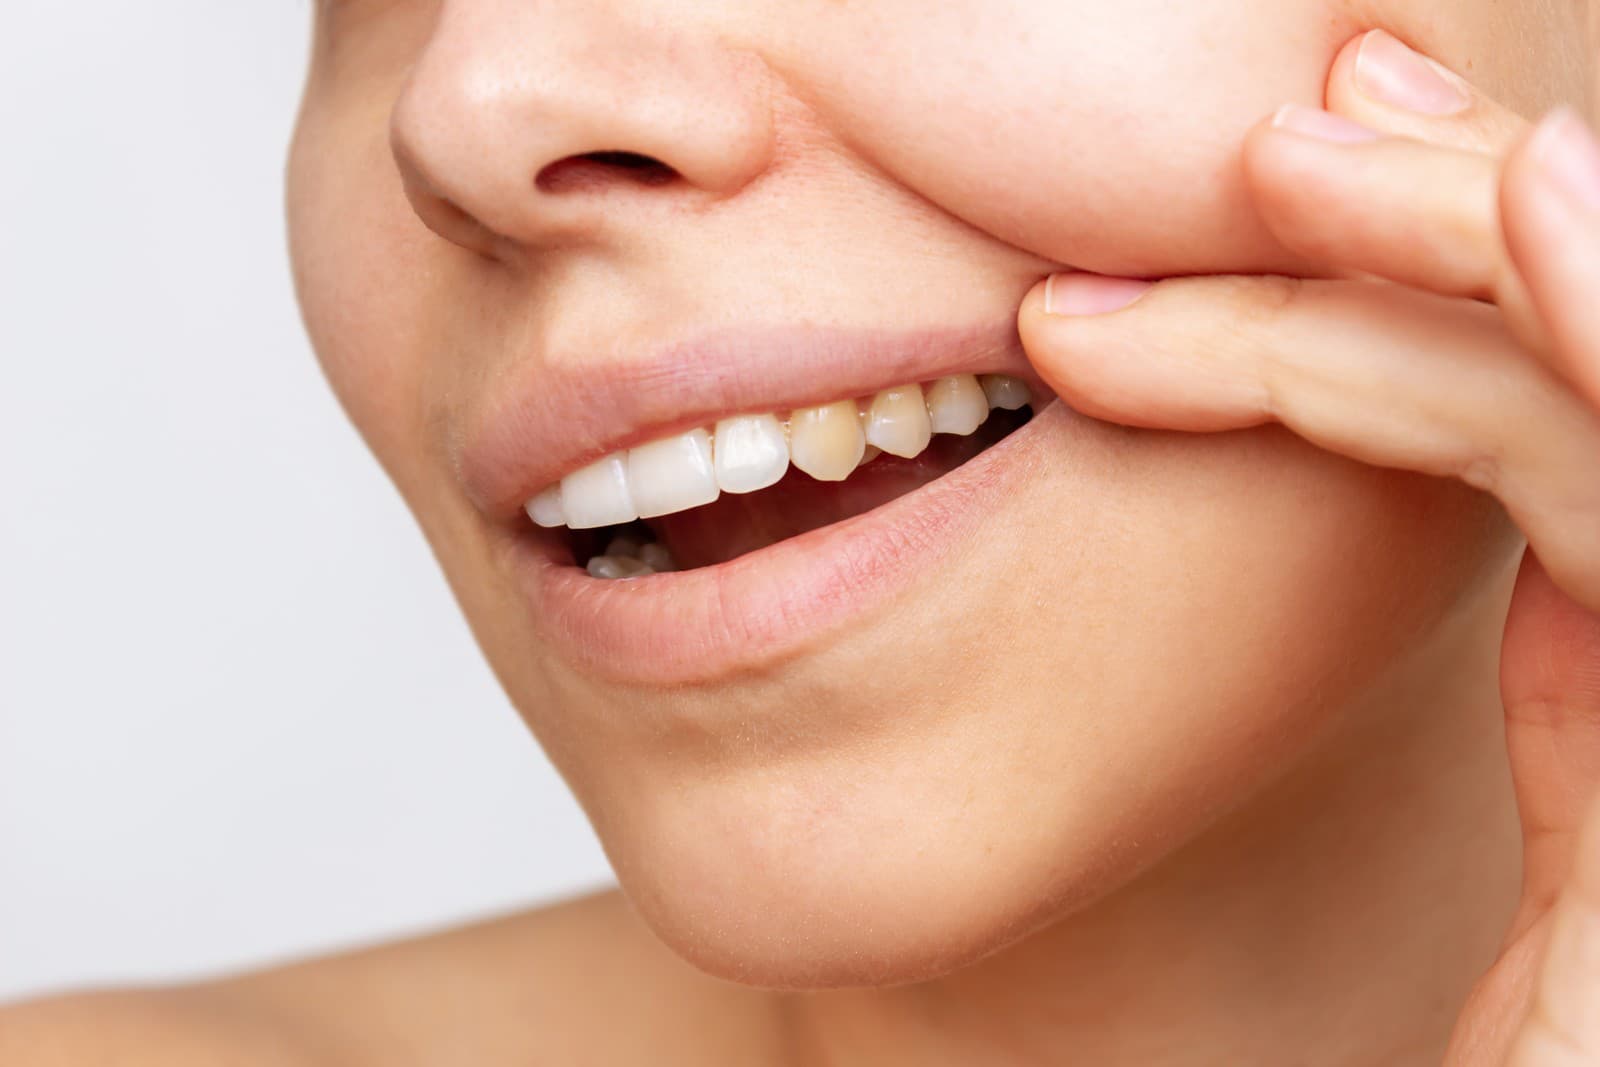 Zubnú sklovinu si dokáže chrániť remineralizačnými gélmi.